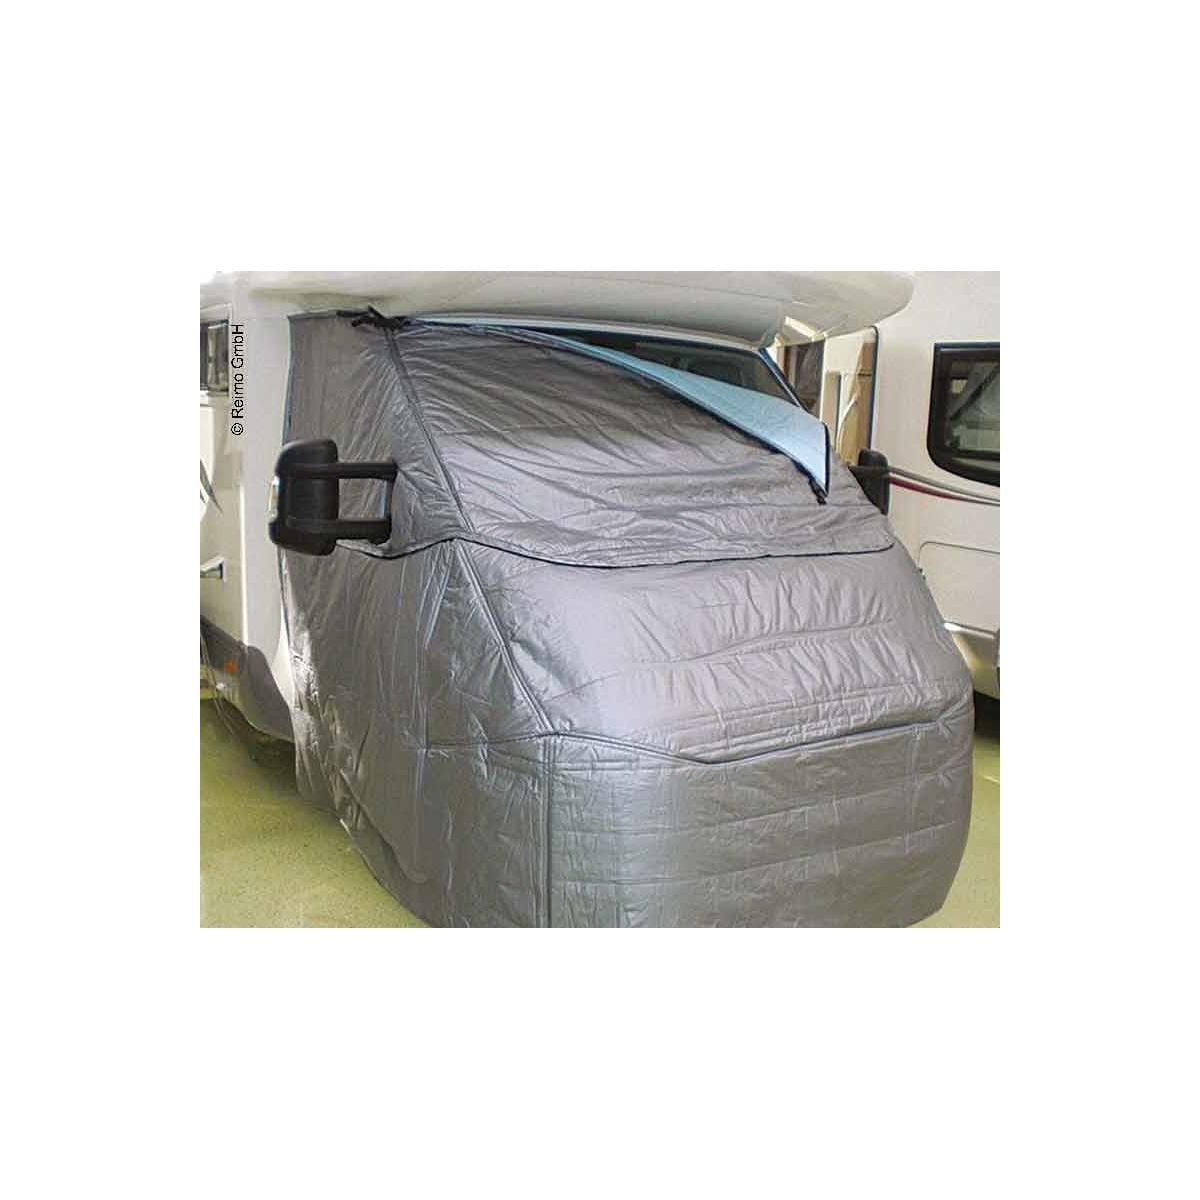 HARICSET Aluminium Isoliermatte Selbstklebend Isolierfolie Dämmfolie  Thermofolie für Fenster Auto Camping oder Pool Perfekt als Wärmedämmung  Kälteschutz und Verdunklung(Size:1 * 25m) : : Baumarkt